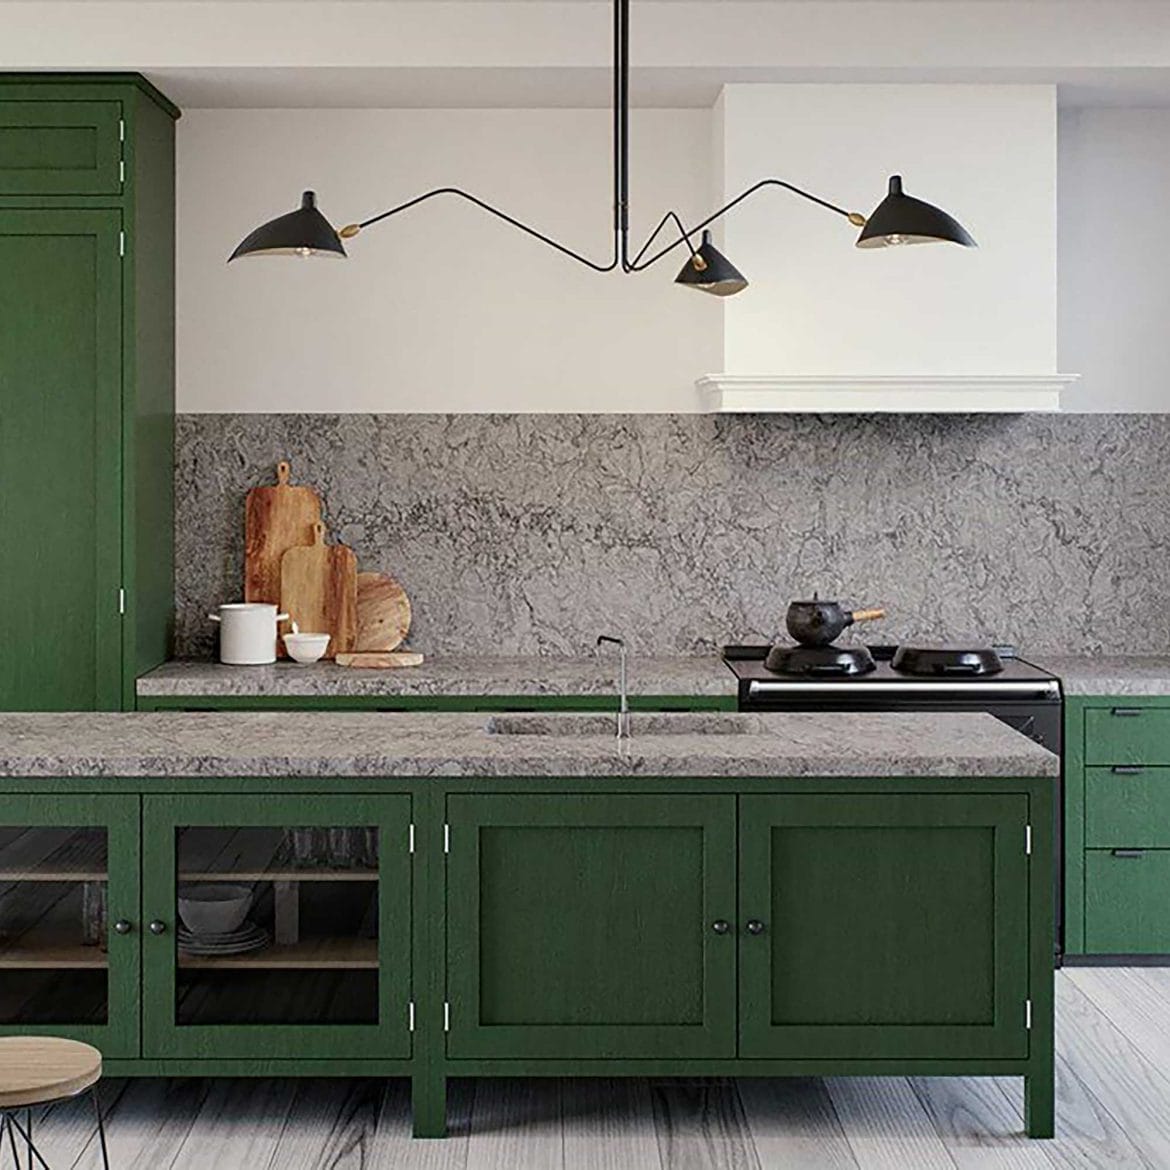 Caesarstone kitchen worktop Turbine grey render